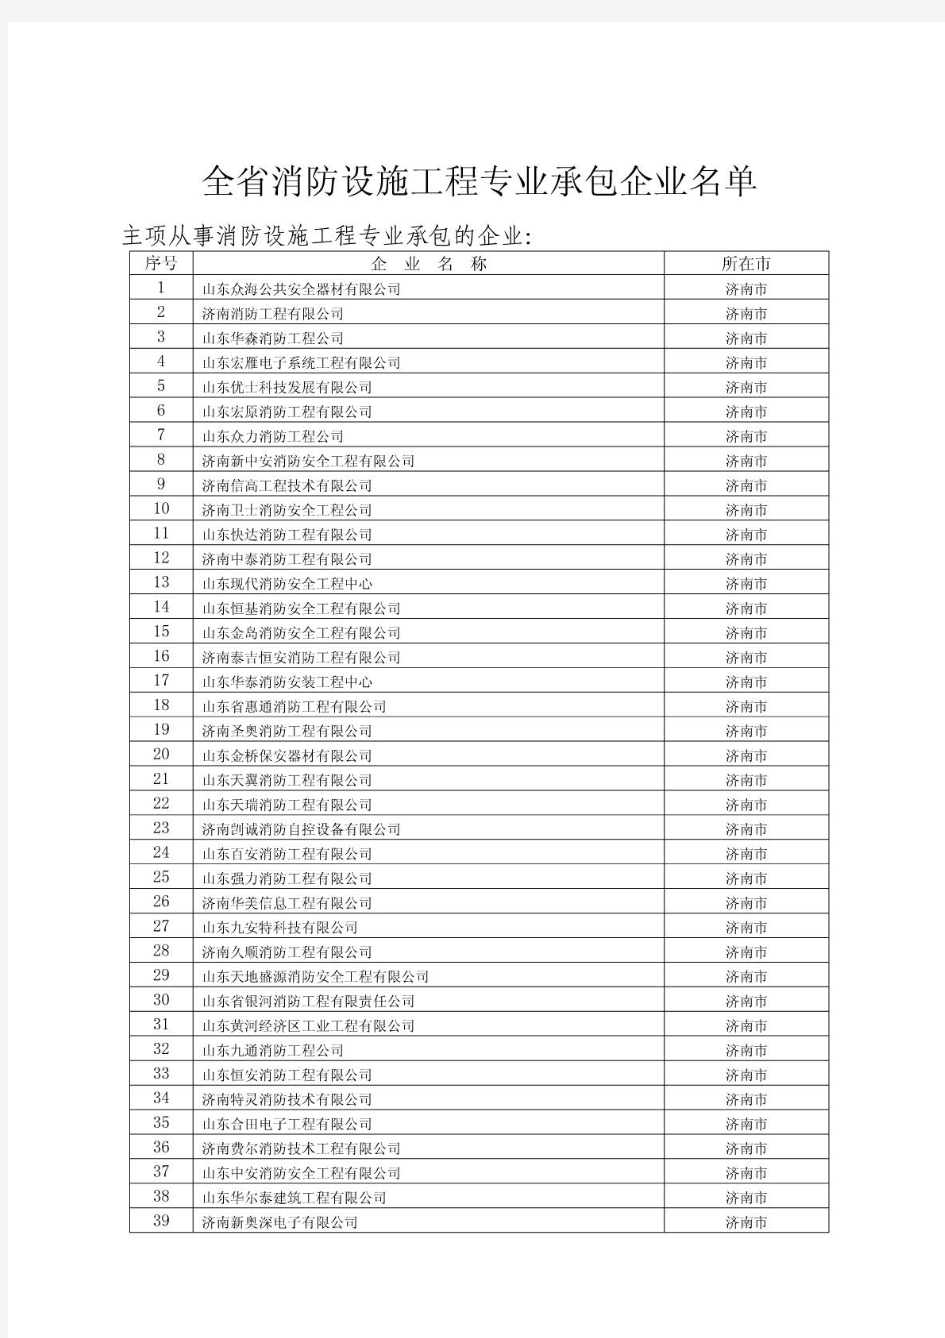 山东省消防设施工程专业承包企业名单